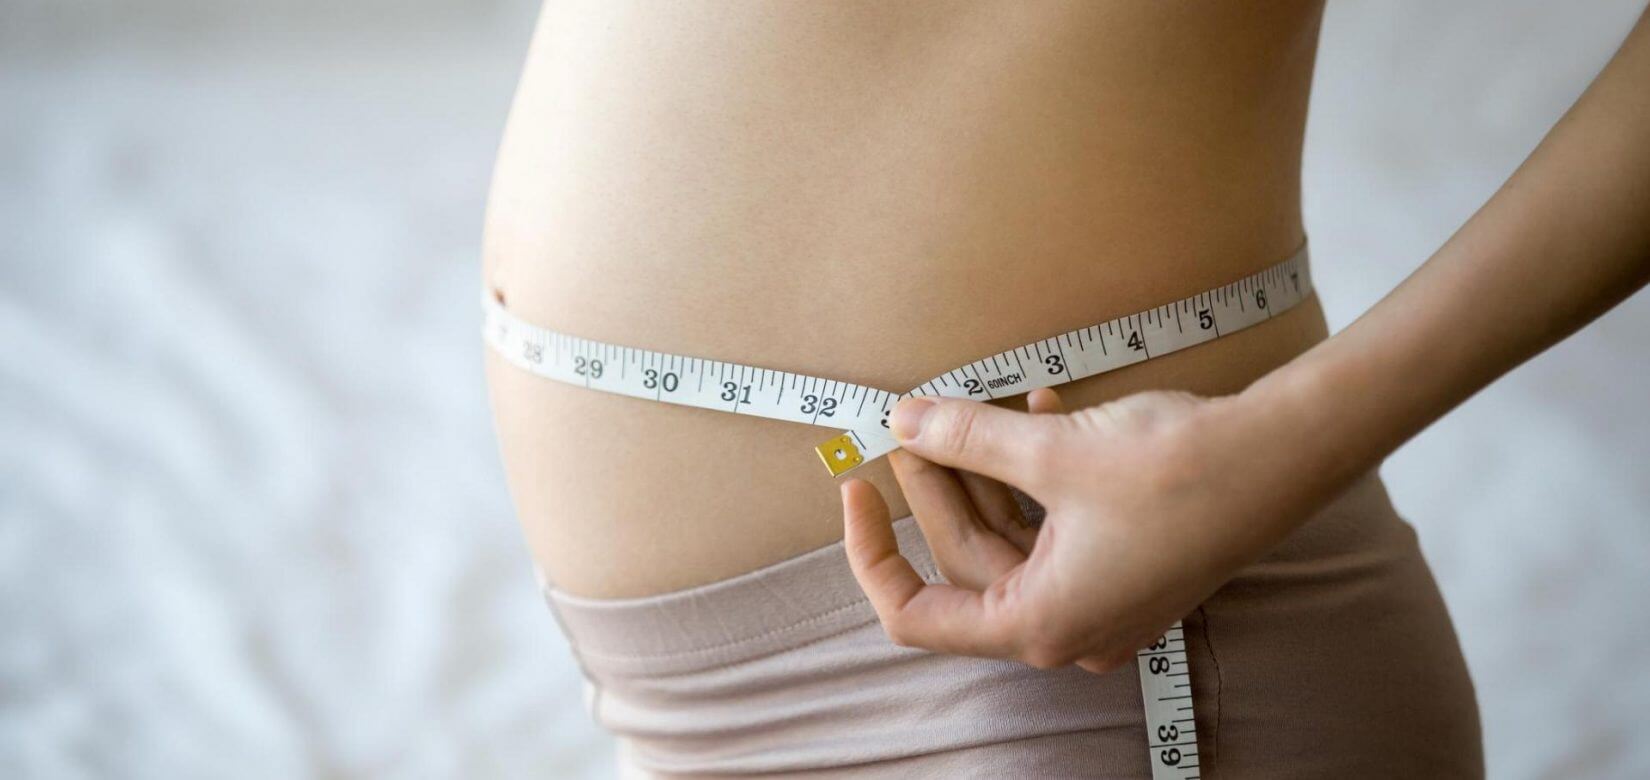 Αύξηση βάρους στην εγκυμοσύνη: Νέες κατευθυντήριες οδηγίες